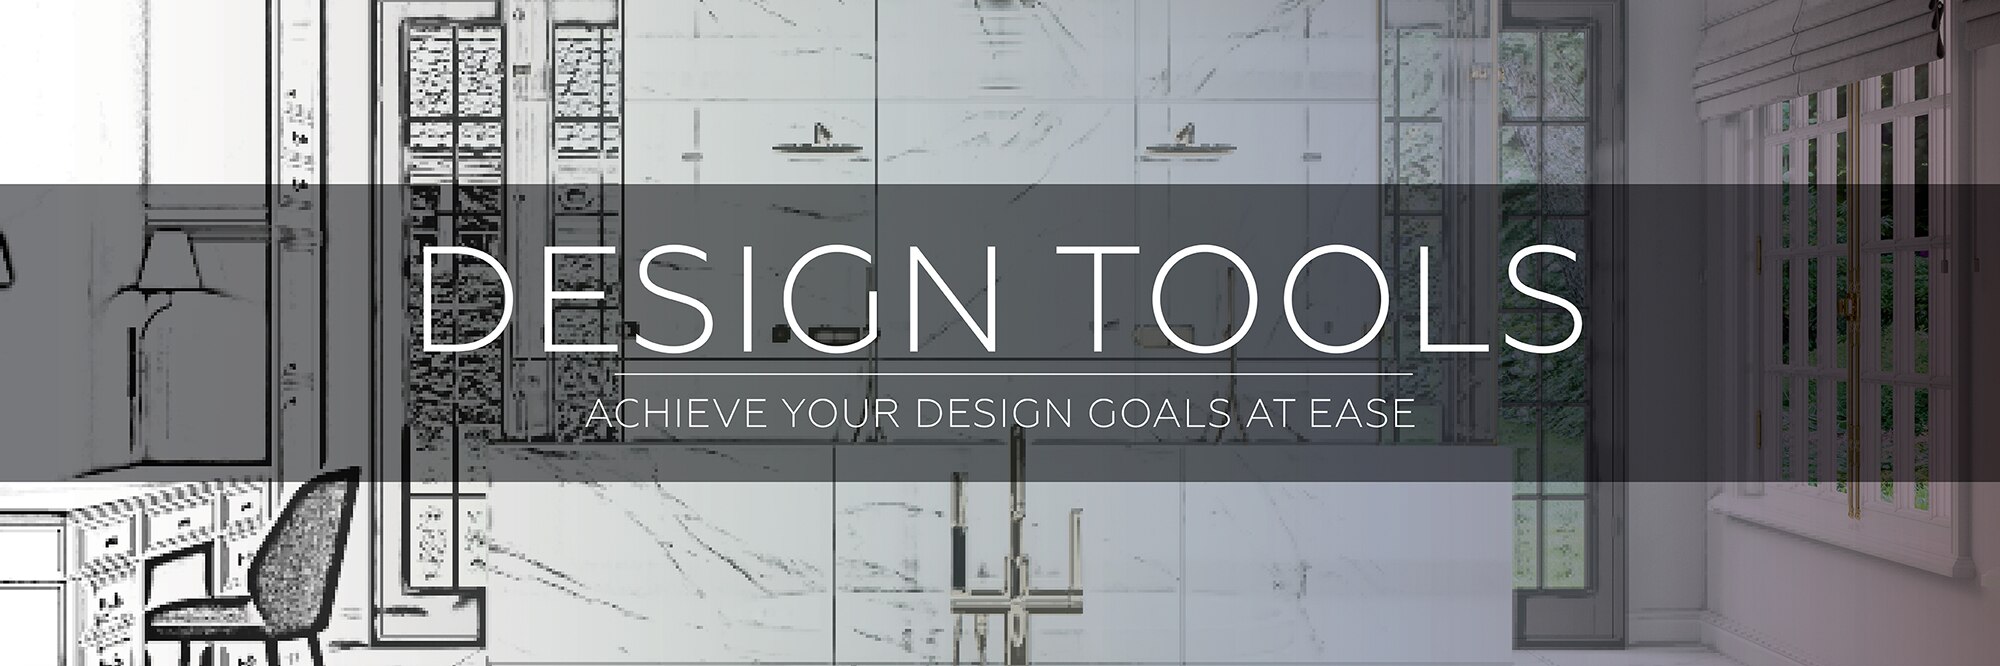 Design Tools. Achieve your design goals at ease.